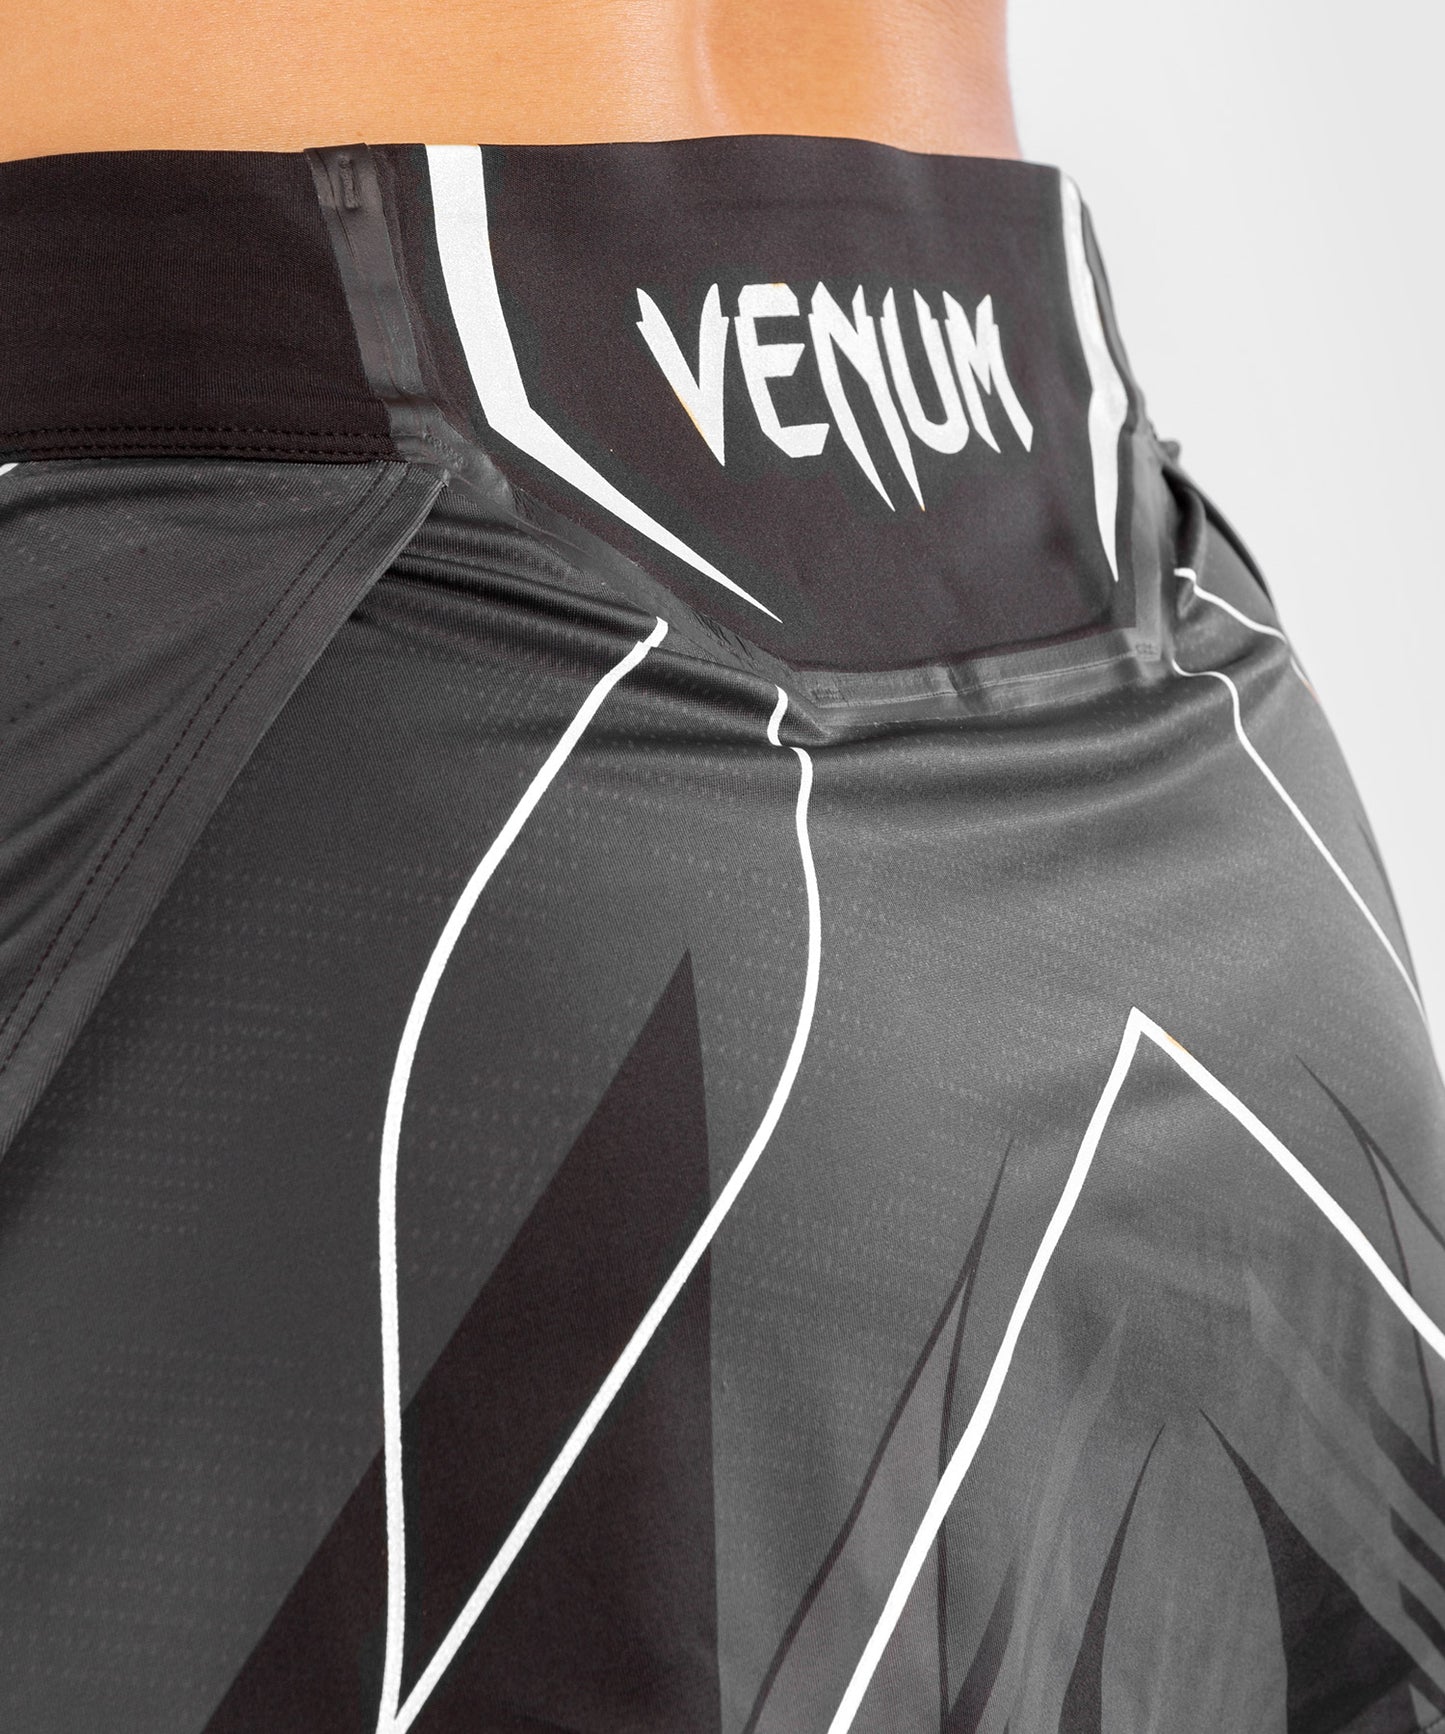 UFC Venum Authentic Fight Night Women's Skort - Black